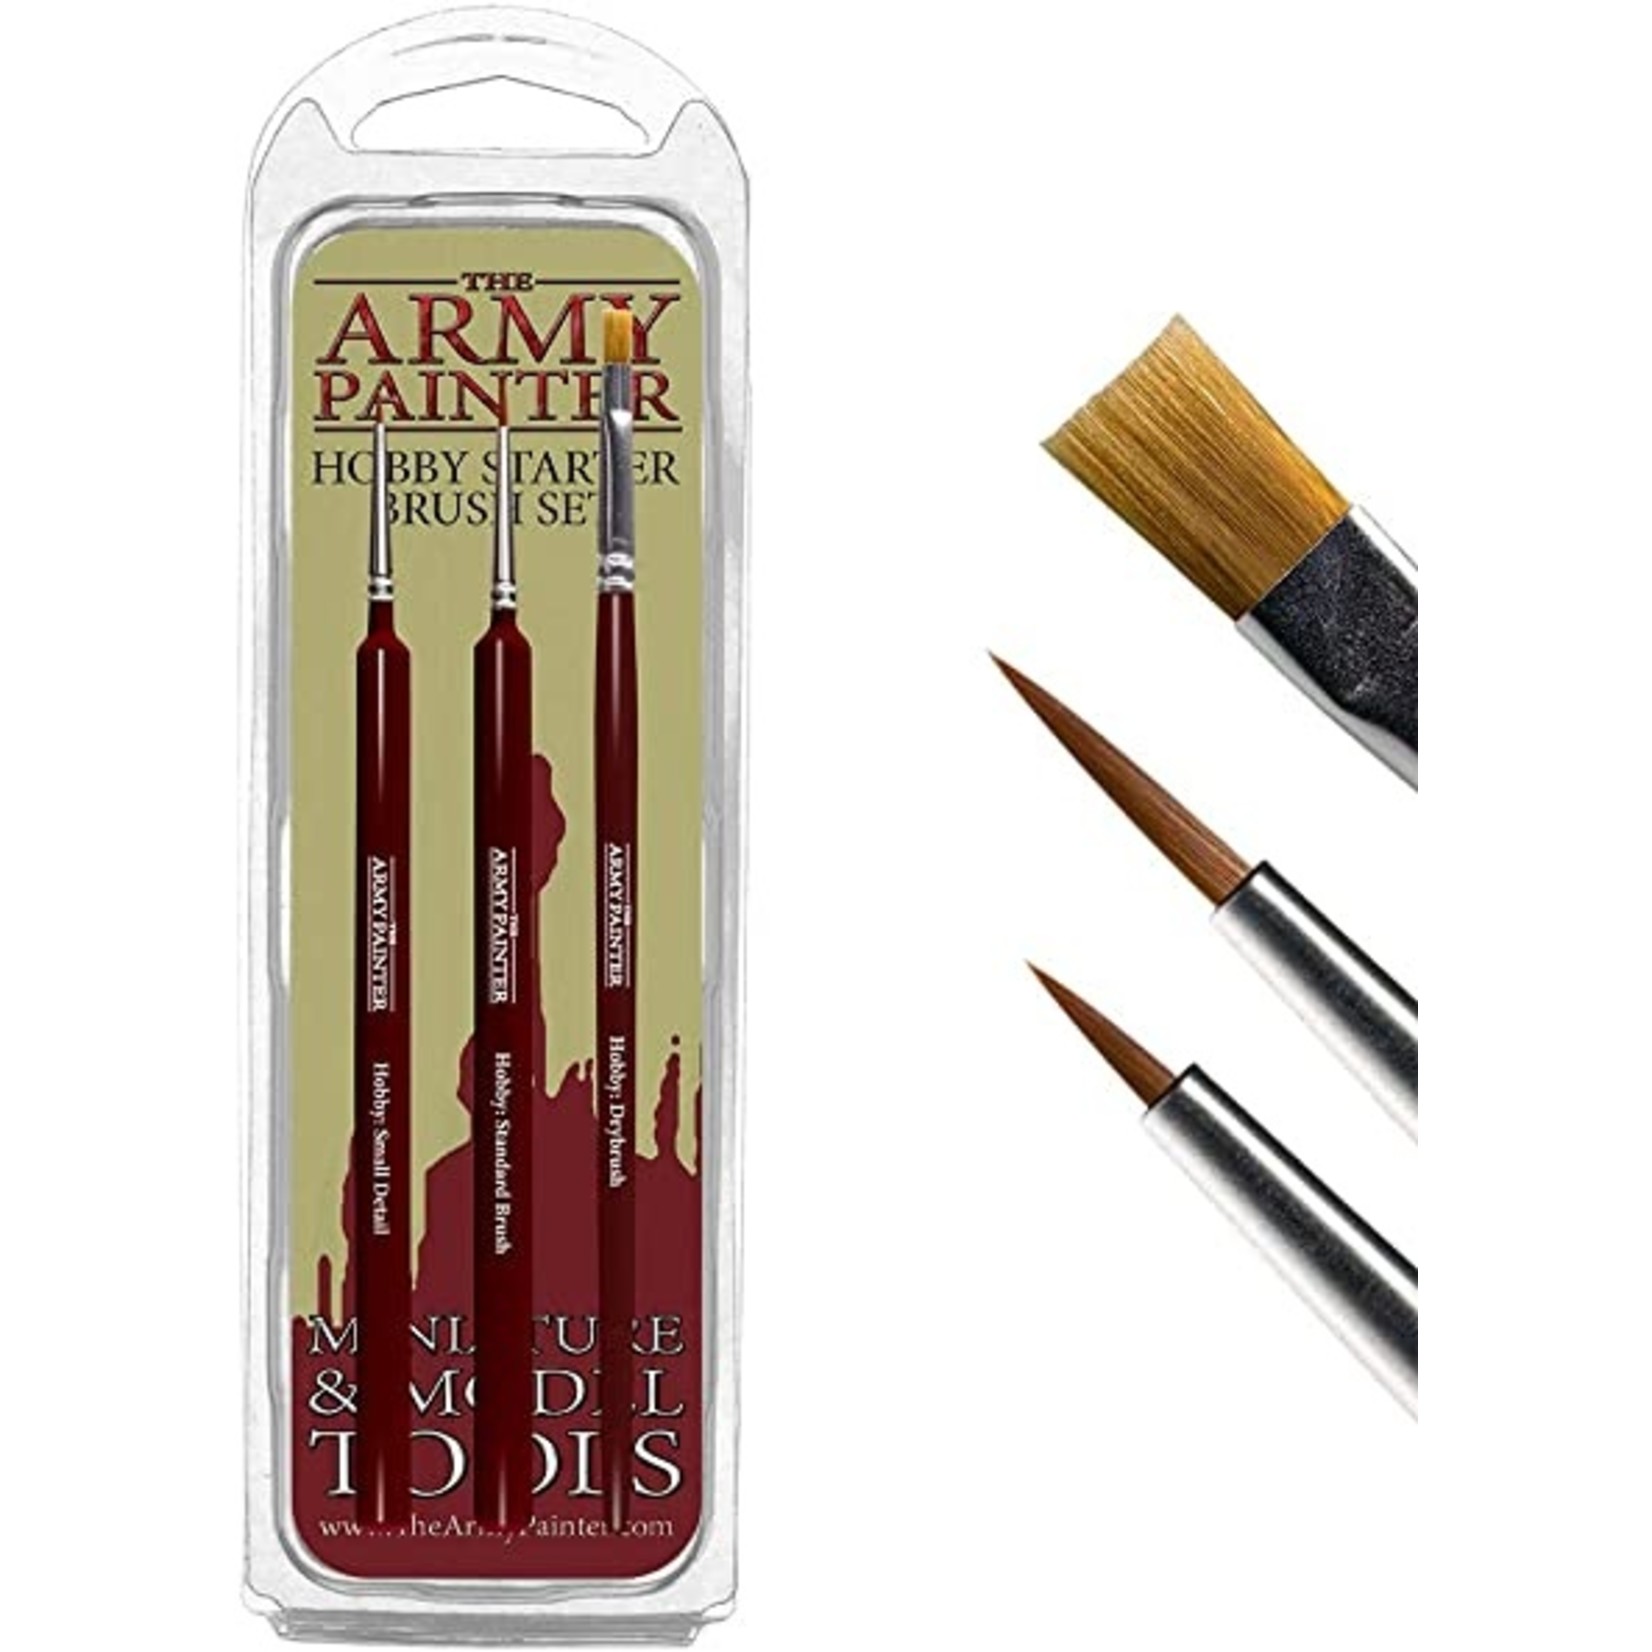 The Army Painter Hobby Starter - Brush Set